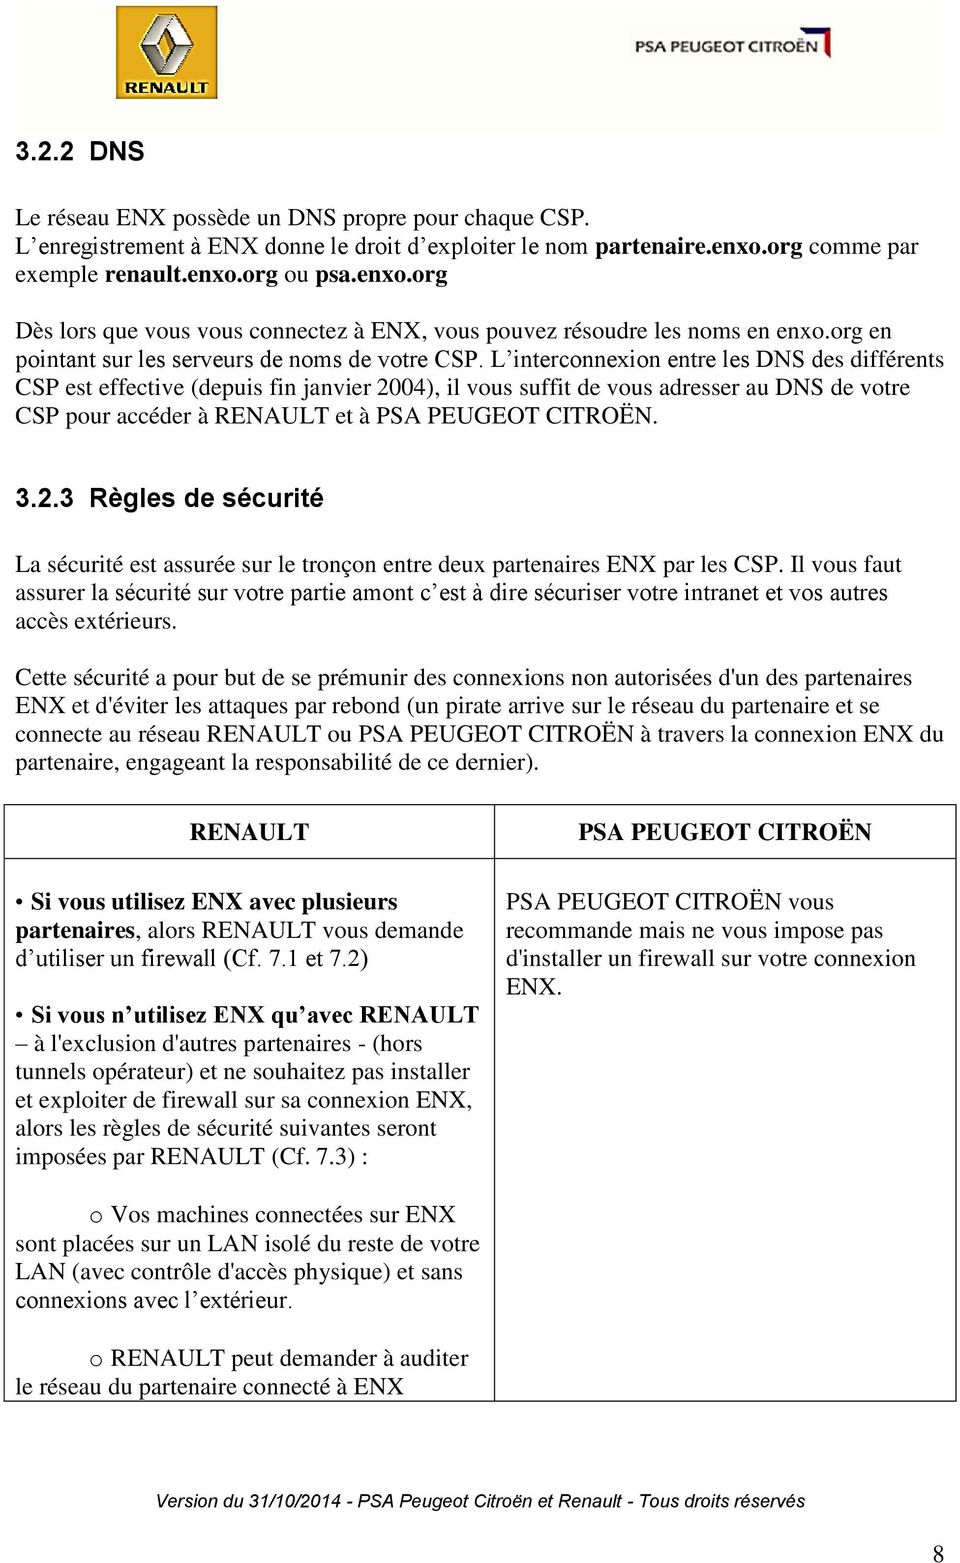 L interconnexion entre les DNS des différents CSP est effective (depuis fin janvier 2004), il vous suffit de vous adresser au DNS de votre CSP pour accéder à RENAULT et à PSA PEUGEOT CITROËN. 3.2.3 Règles de sécurité La sécurité est assurée sur le tronçon entre deux partenaires ENX par les CSP.